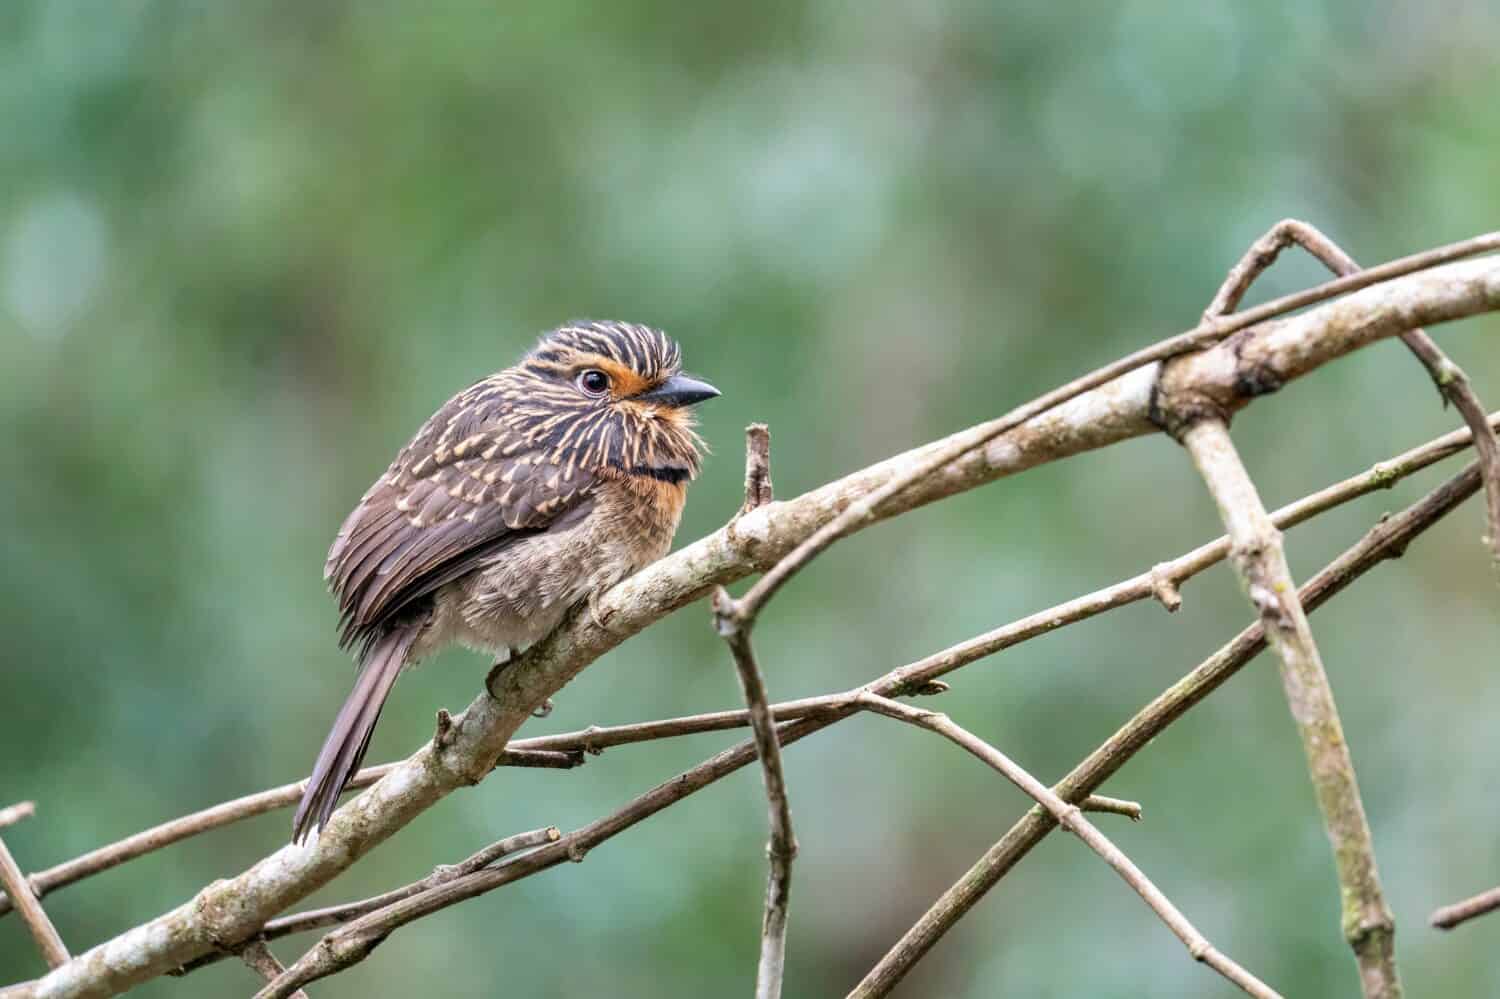 Un bellissimo Puffbird dal petto a mezzaluna è appollaiato su un ramoscello nella foresta di Alto Castelinho, Vargem Alta - Espírito Santo, Brasile